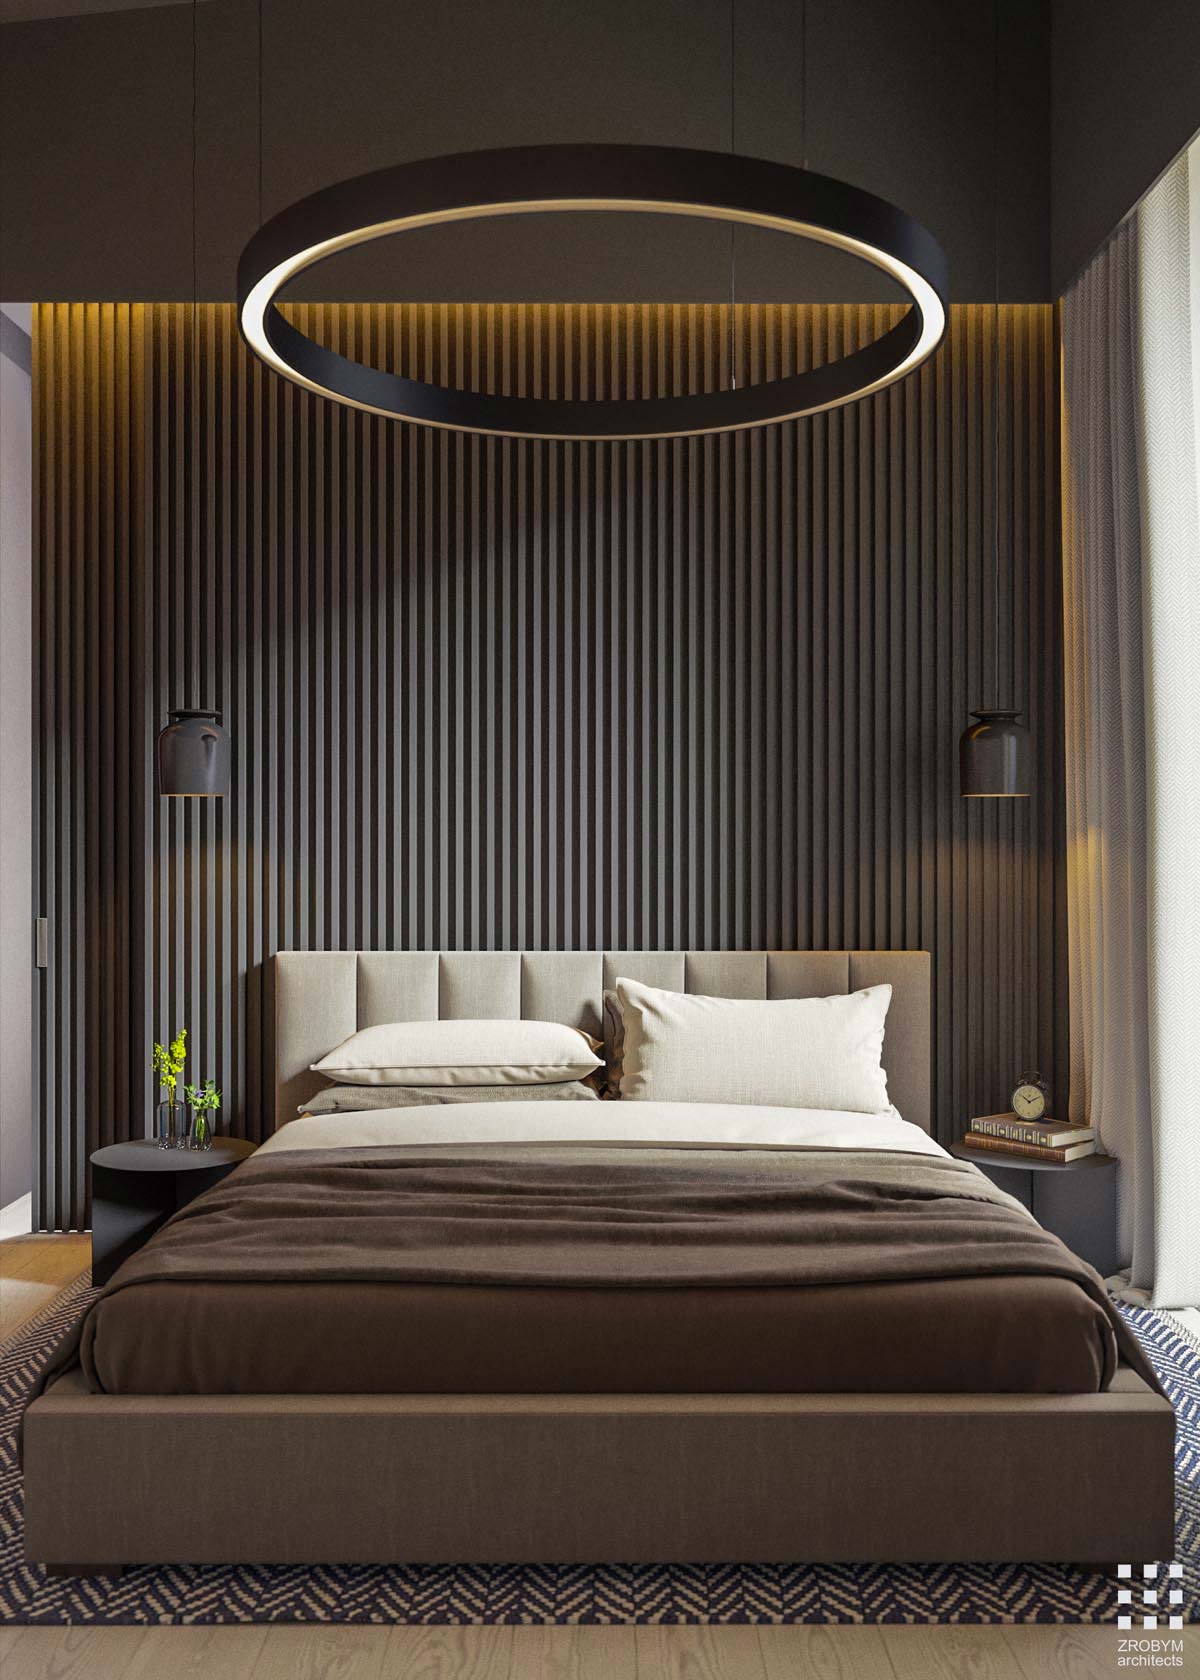 Aannemelijk contrast bouwen Led verlichting in de slaapkamer – Slaapkamer ideeën